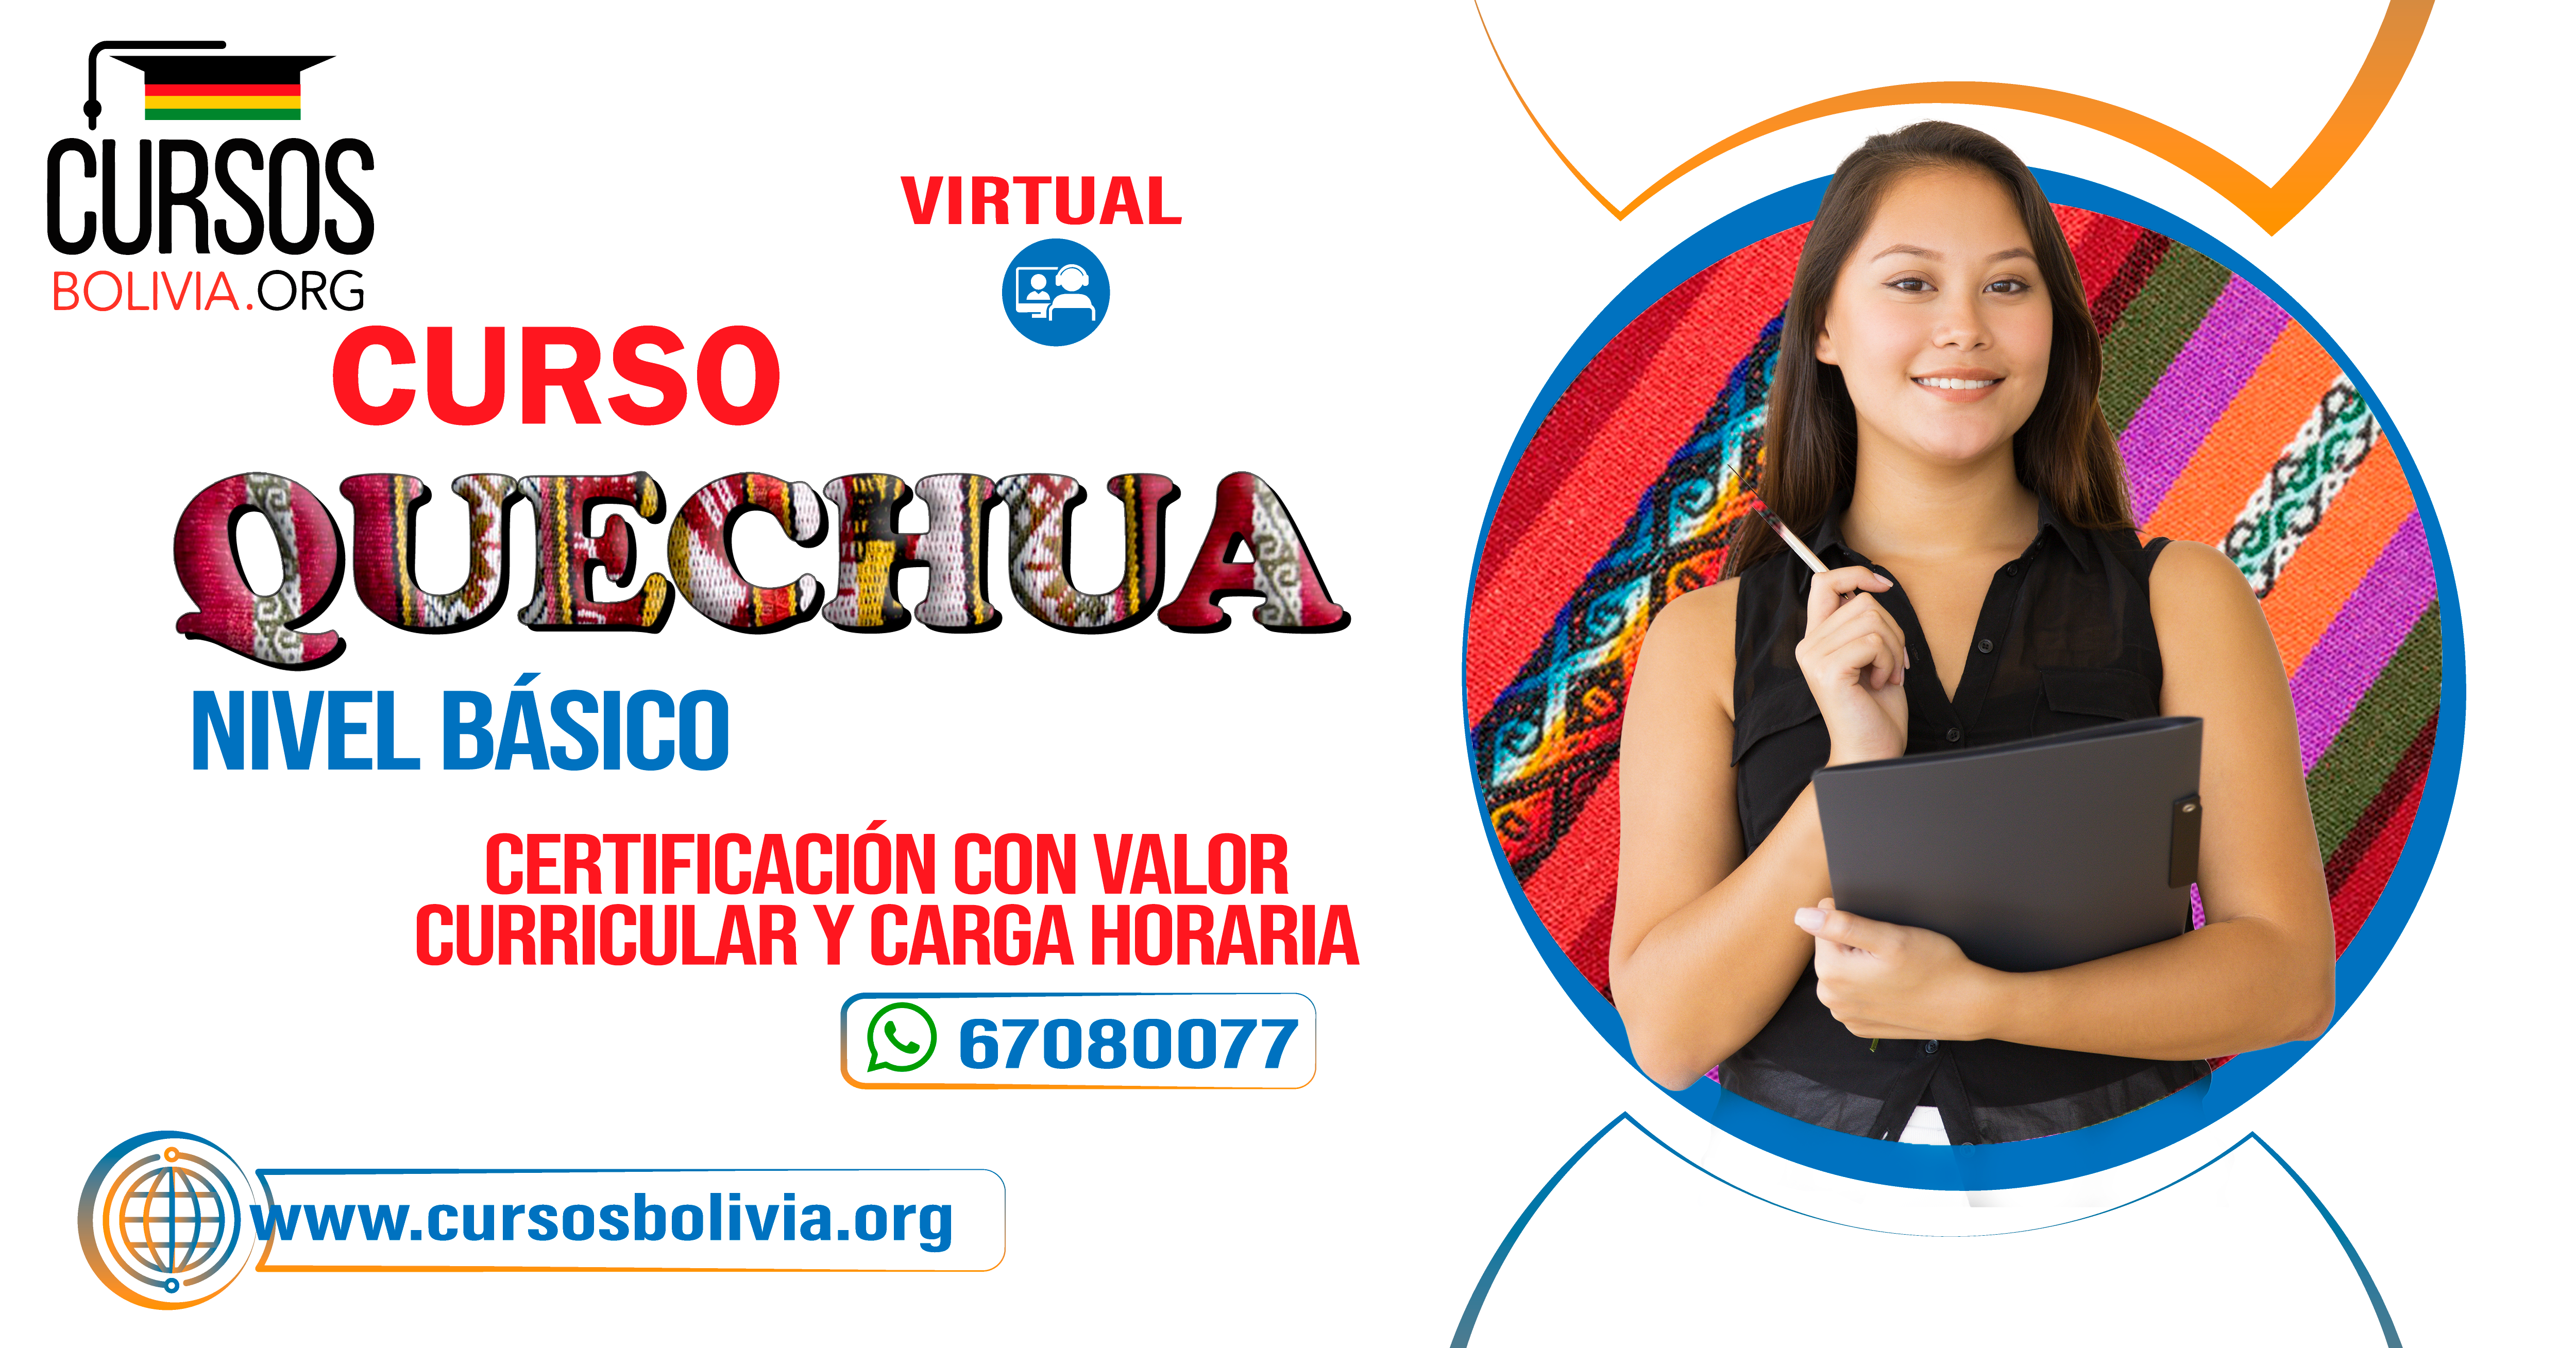  Curso QUECHUA BASICO virtual